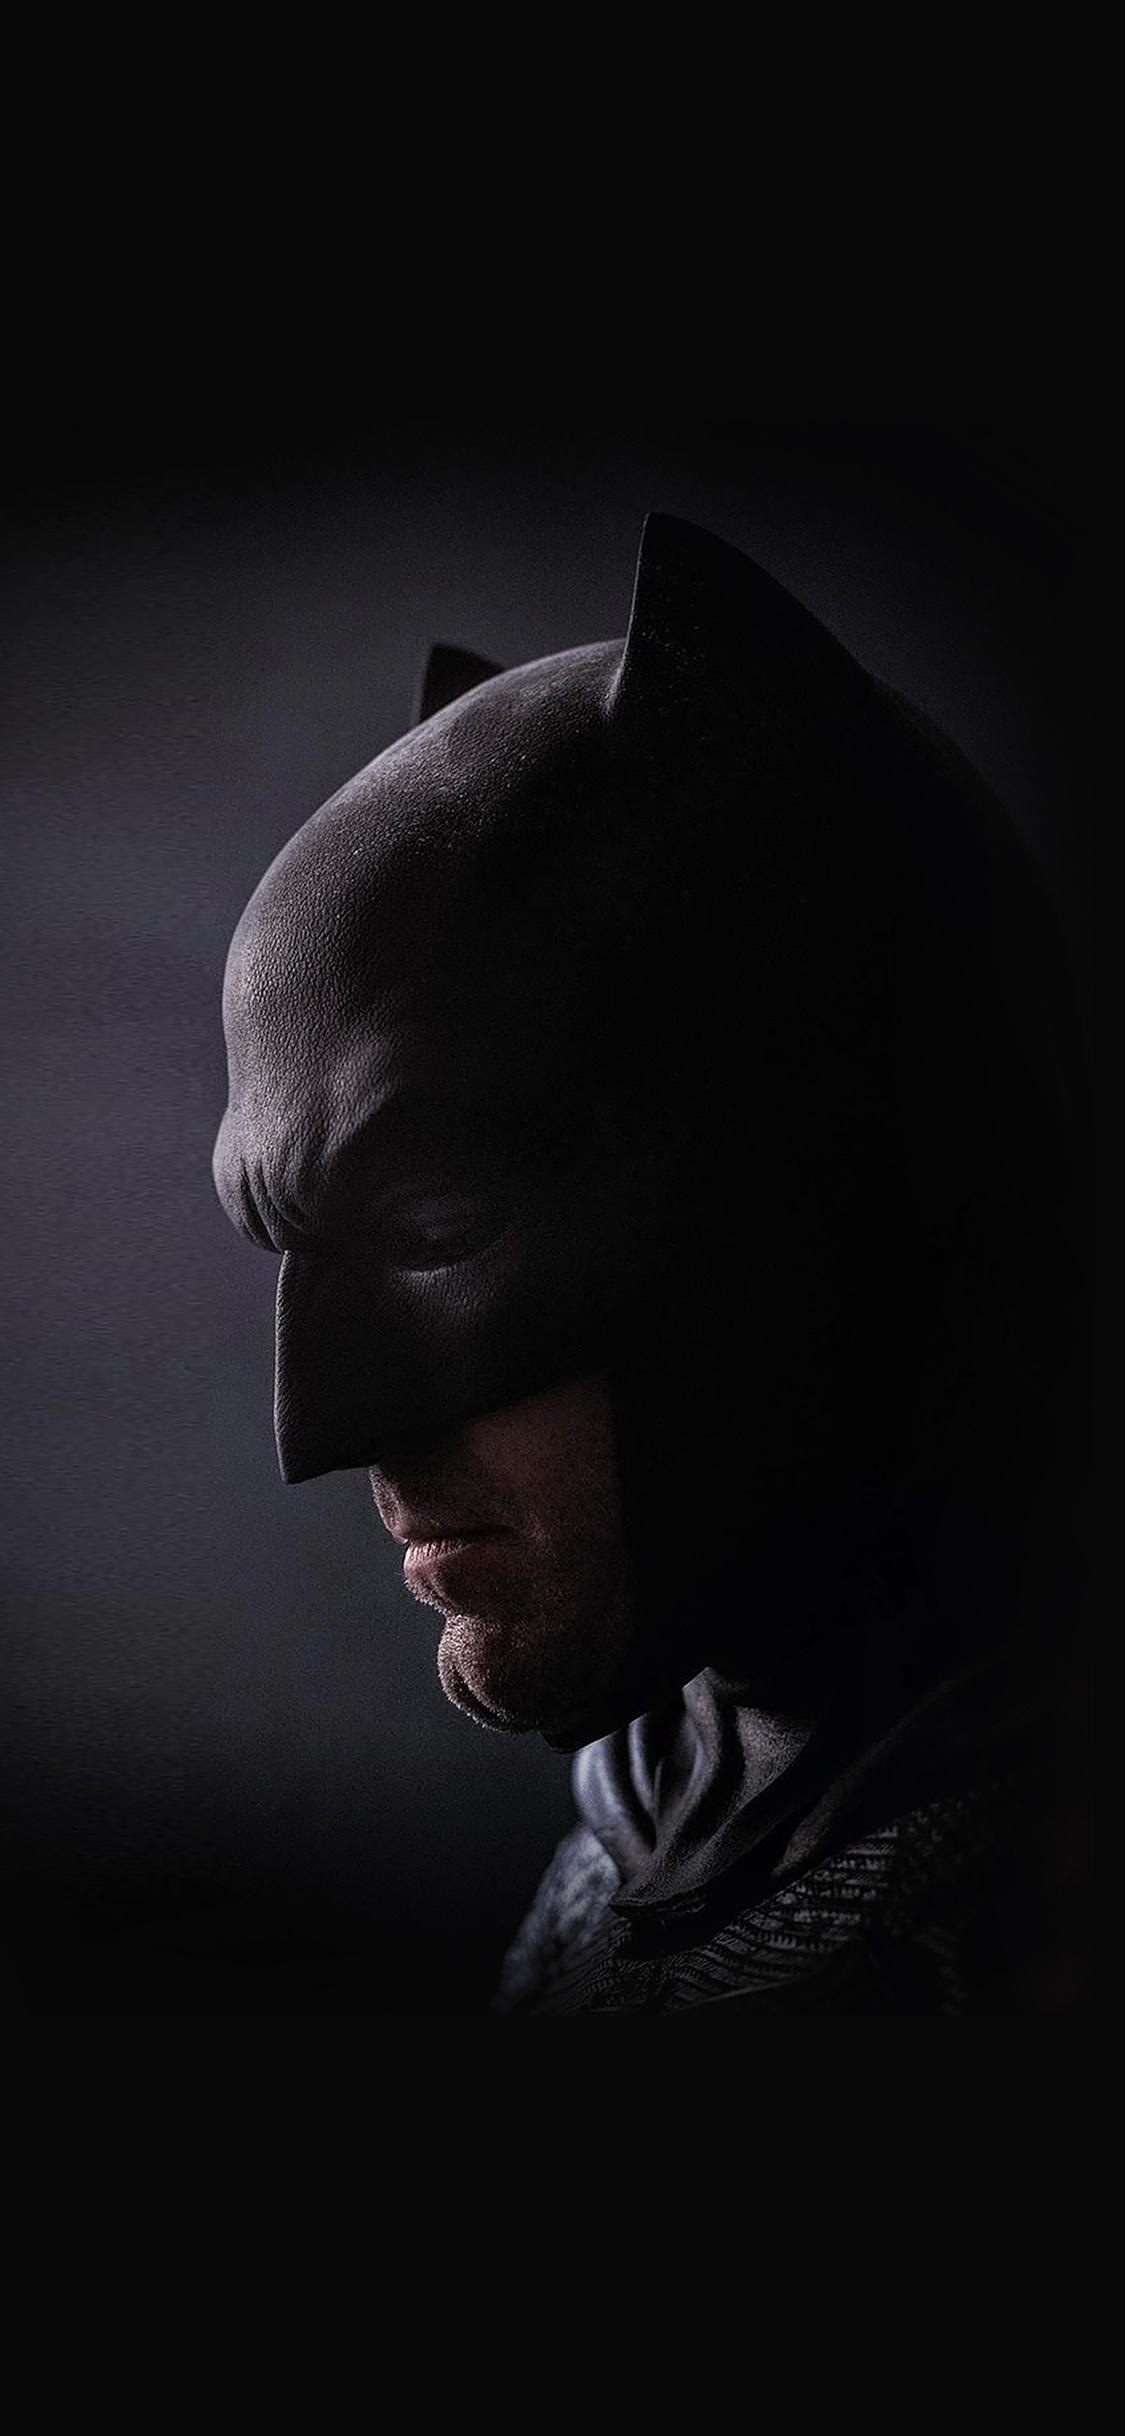 New batman superman ben hero iPhone X Wallpaper Free Download